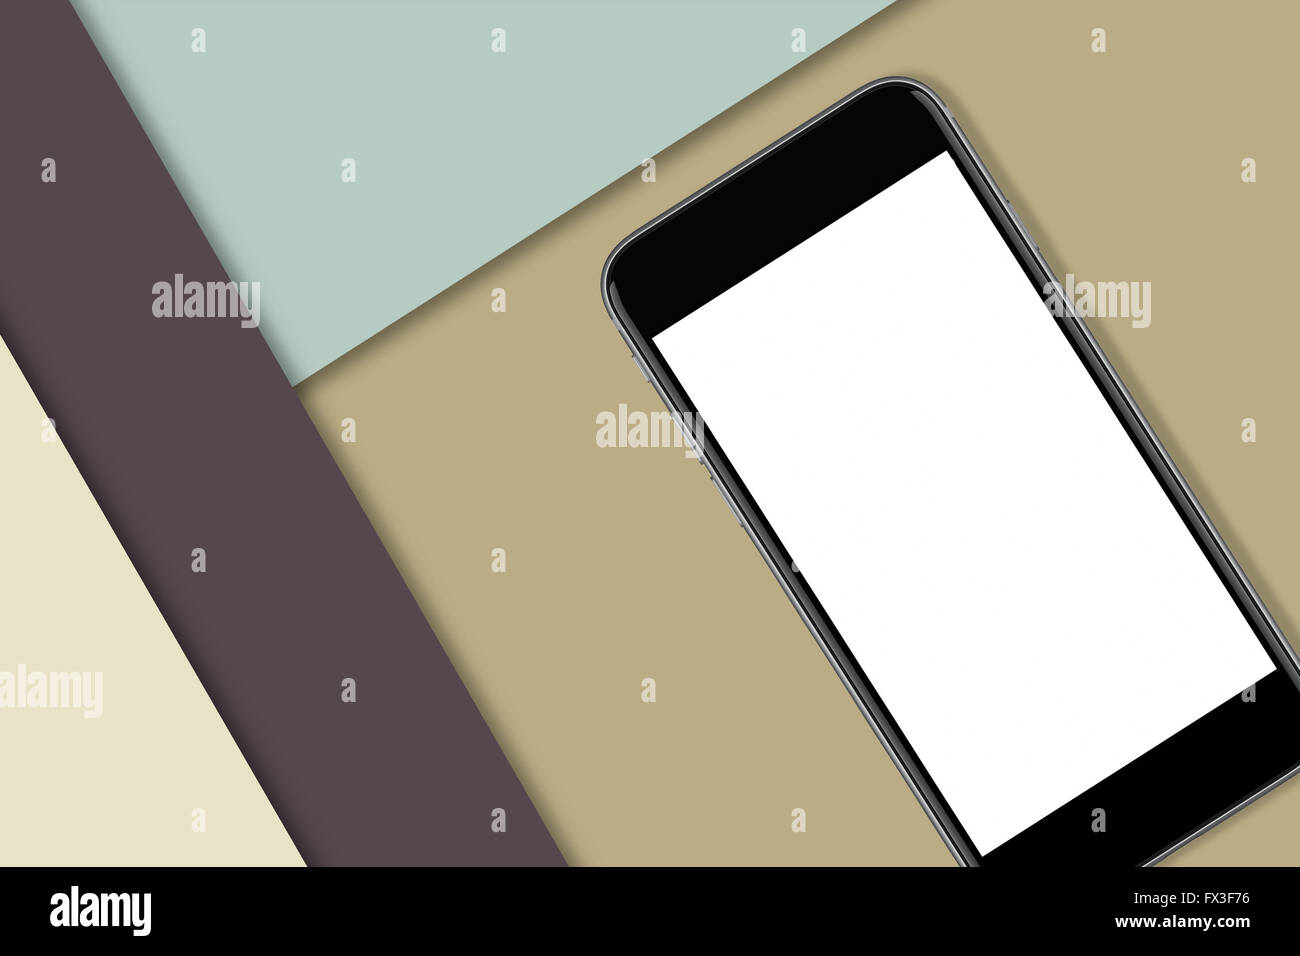 Schwarz Smartphone mit leeren Bildschirm, Design oder Kopie hinzuzufügen. Bunte Materialdesign im Hintergrund Stockfoto